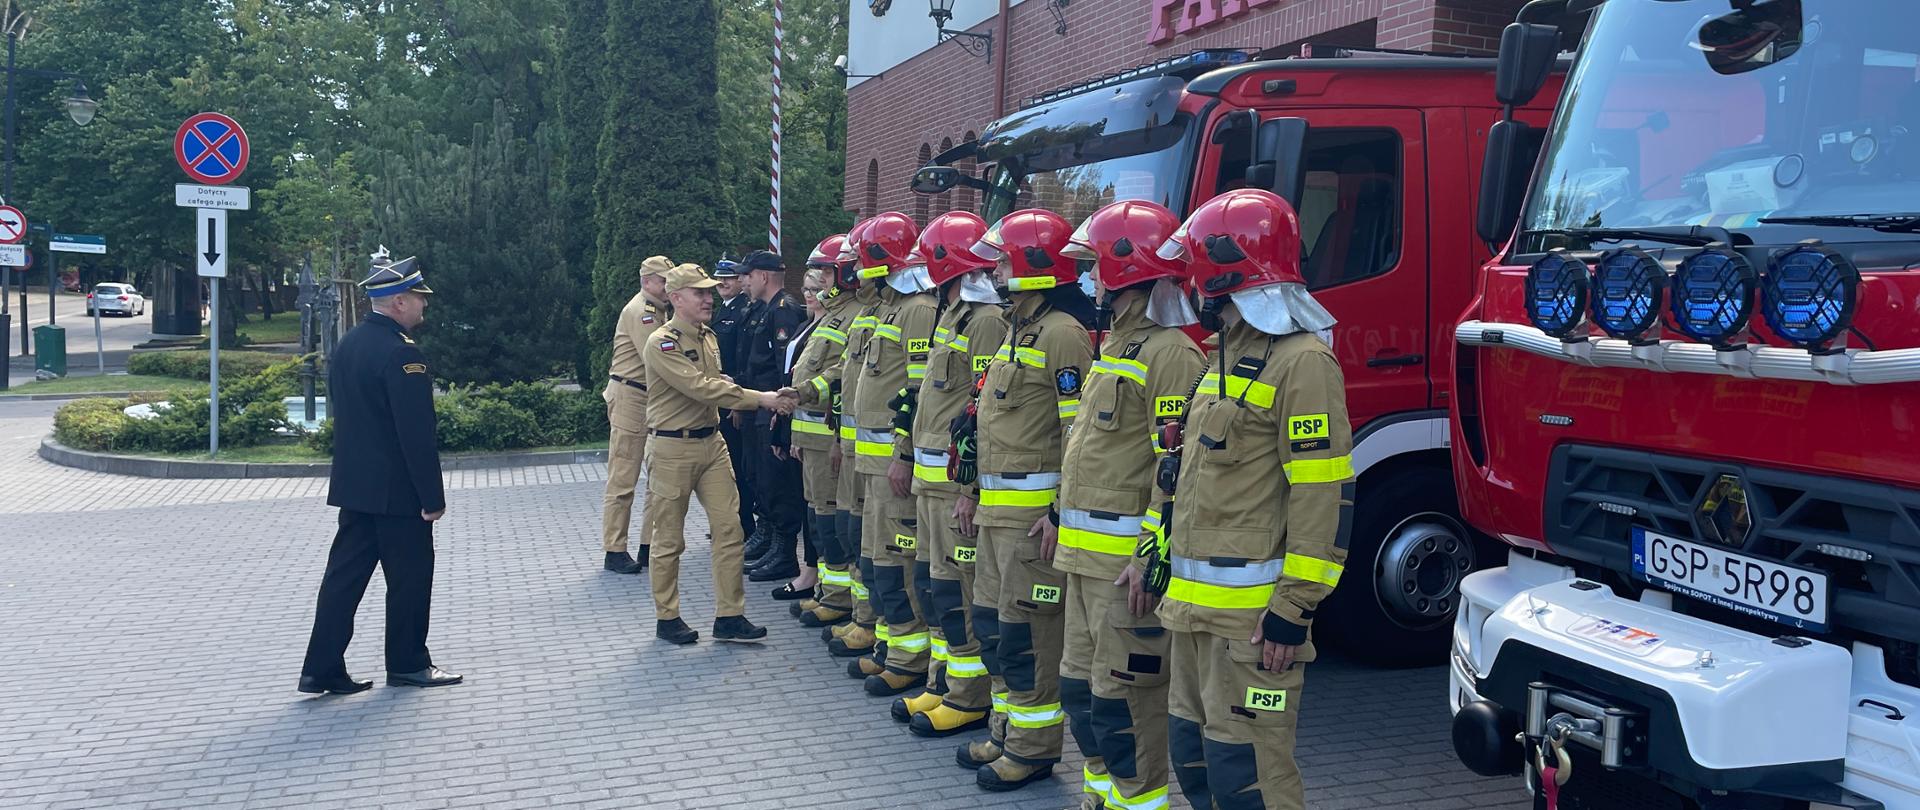 Komendant Główny oraz Pomorski Komendant Wojewódzki Państwowej Straży Pożarnej wita się ze strażakami stojącymi w szeregu przed samochodami gaśniczymi